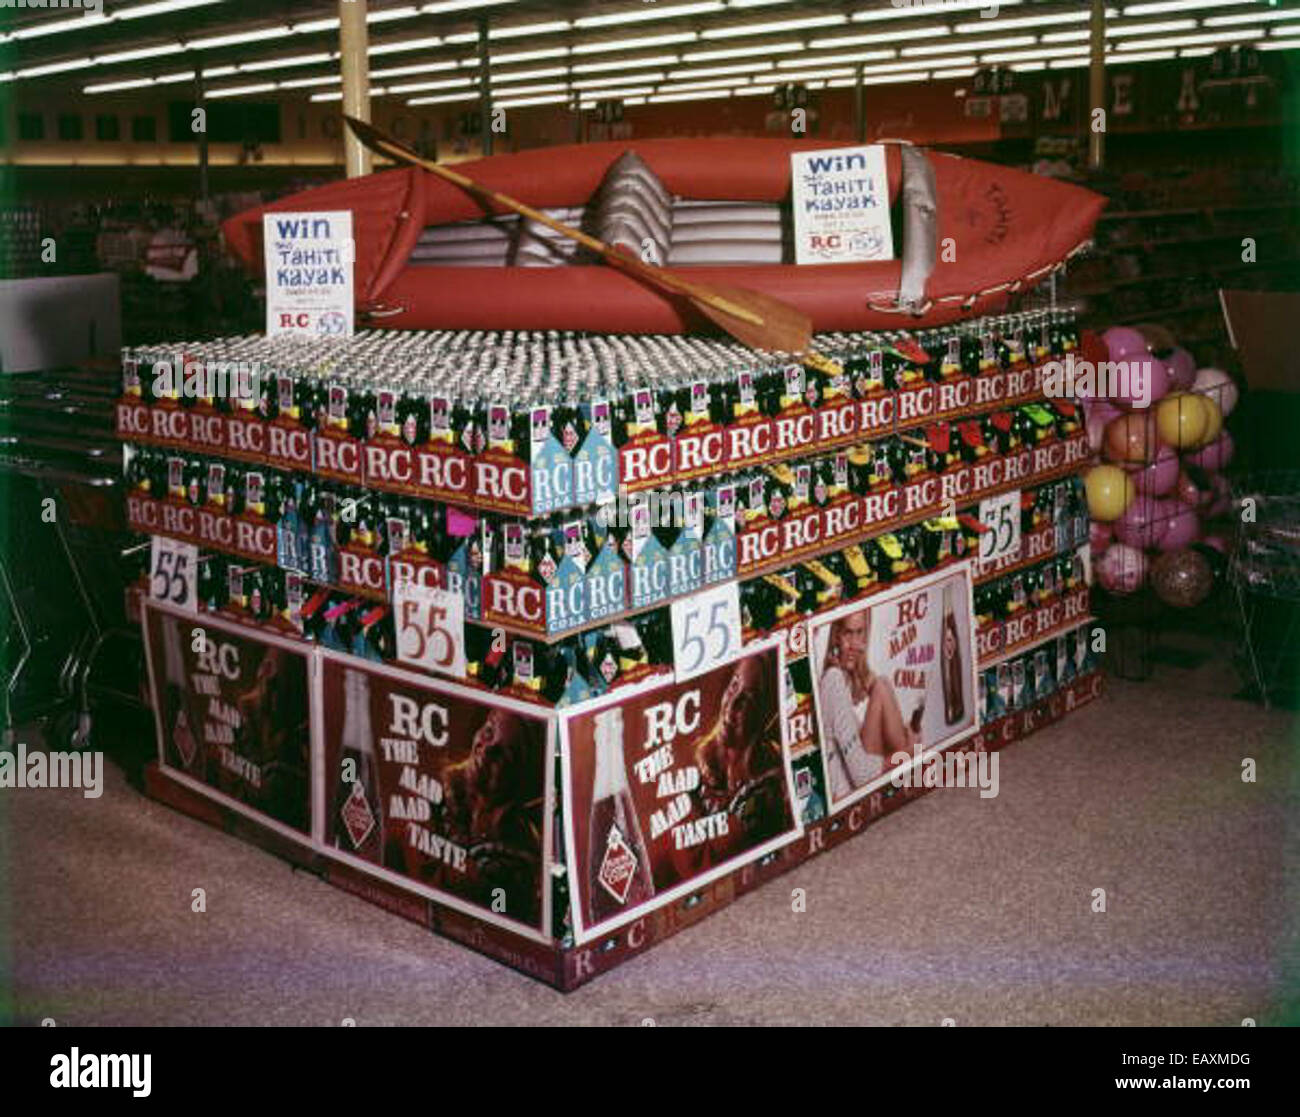 Supermarkt-Anzeige des RC Cola - Tallahassee 75277419 o Stockfoto